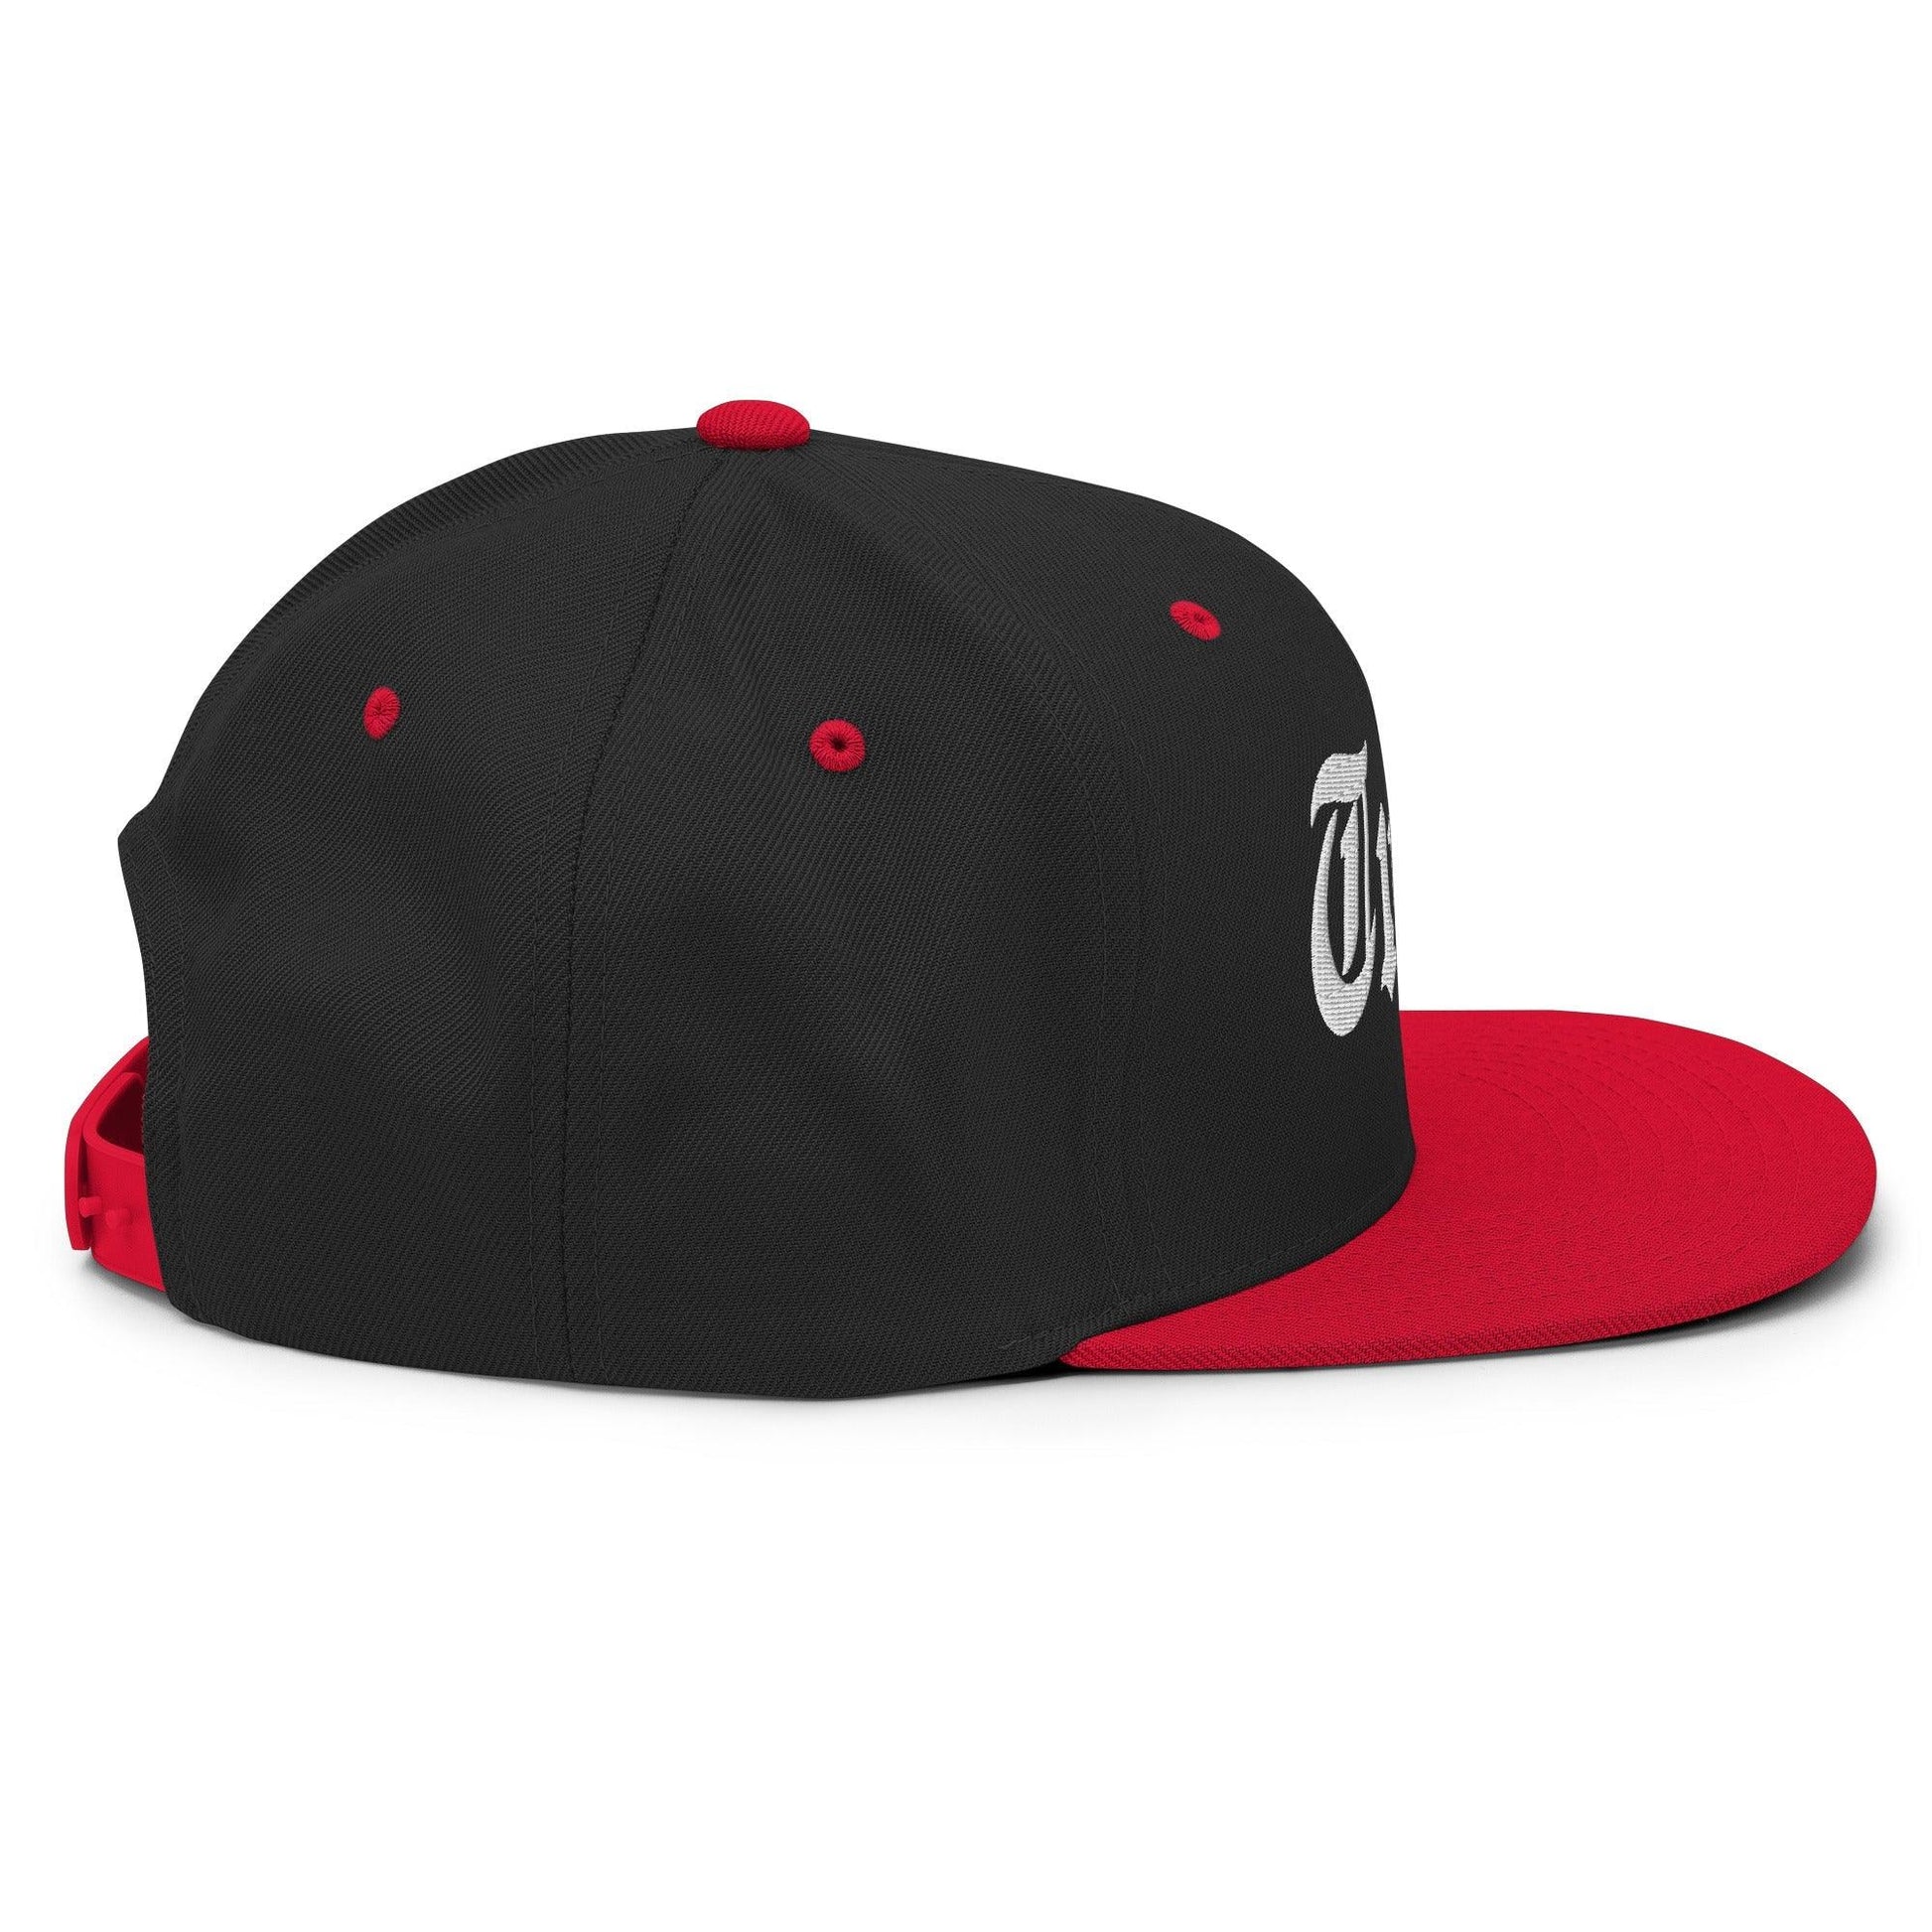 Tulsa OG Old English Snapback Hat Black Red